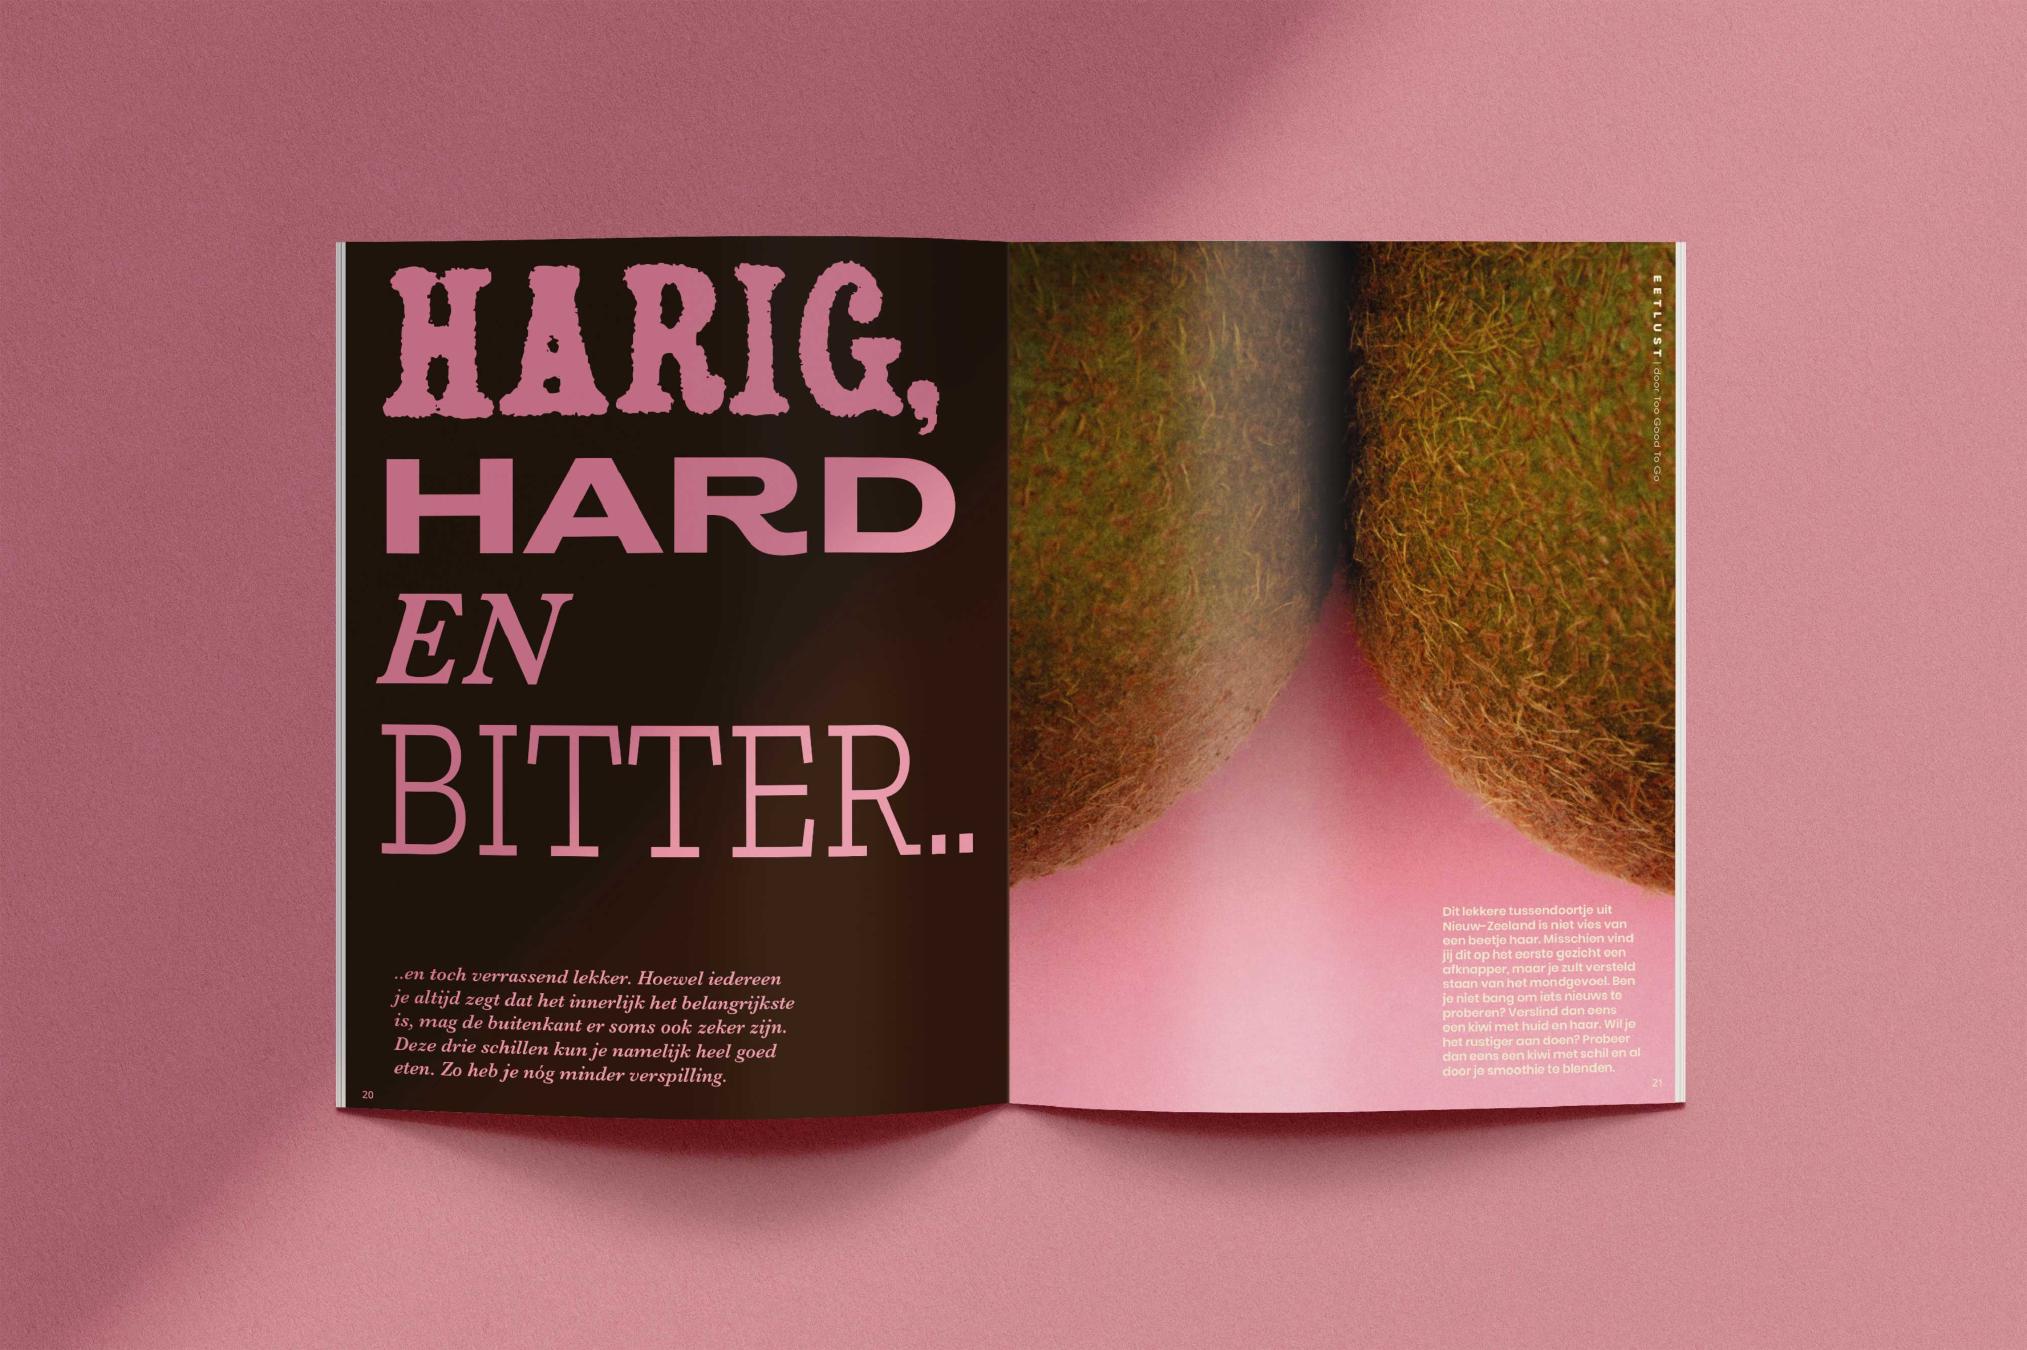 Harig, hard en bitter - Eetlust magazine - Too Good To Go